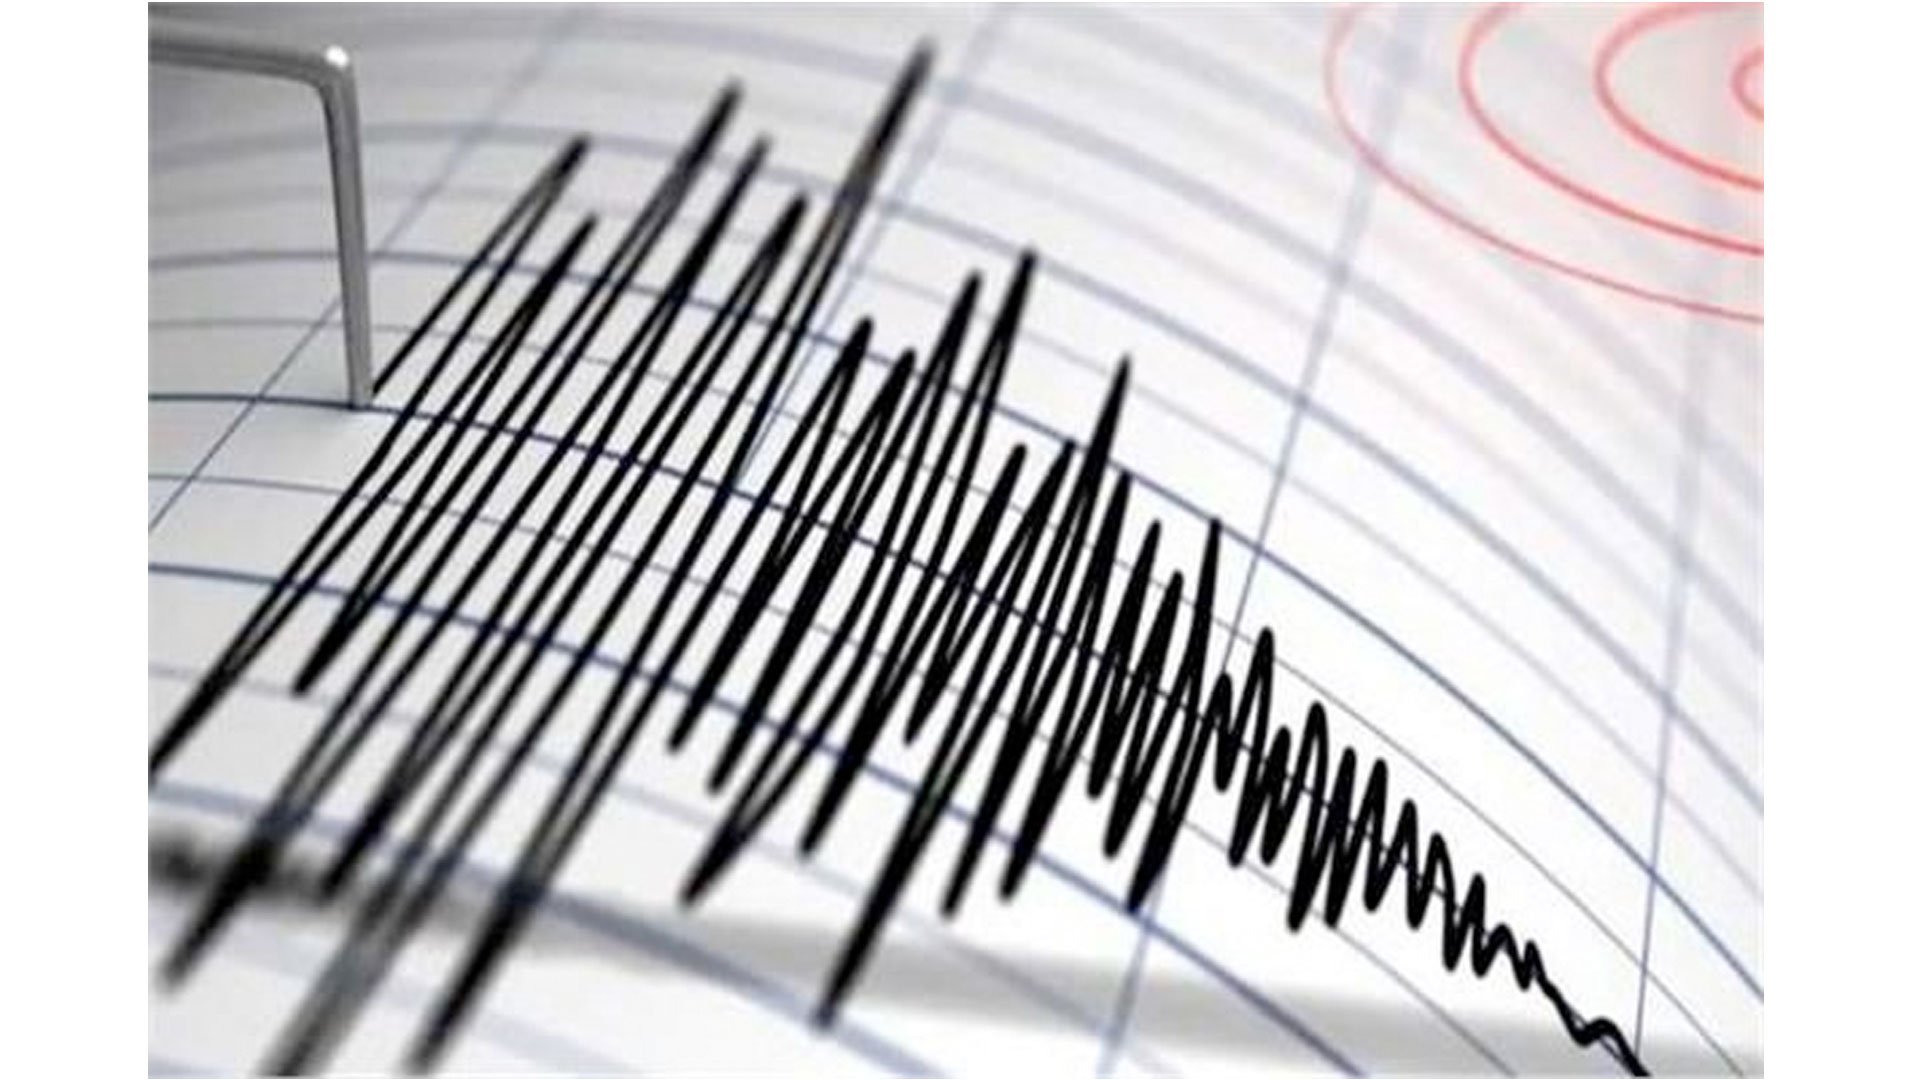 إدارة الكوارث والطوارئ التركية: زلزال بقوة 5.5 درجات يضرب البحر المتوسط